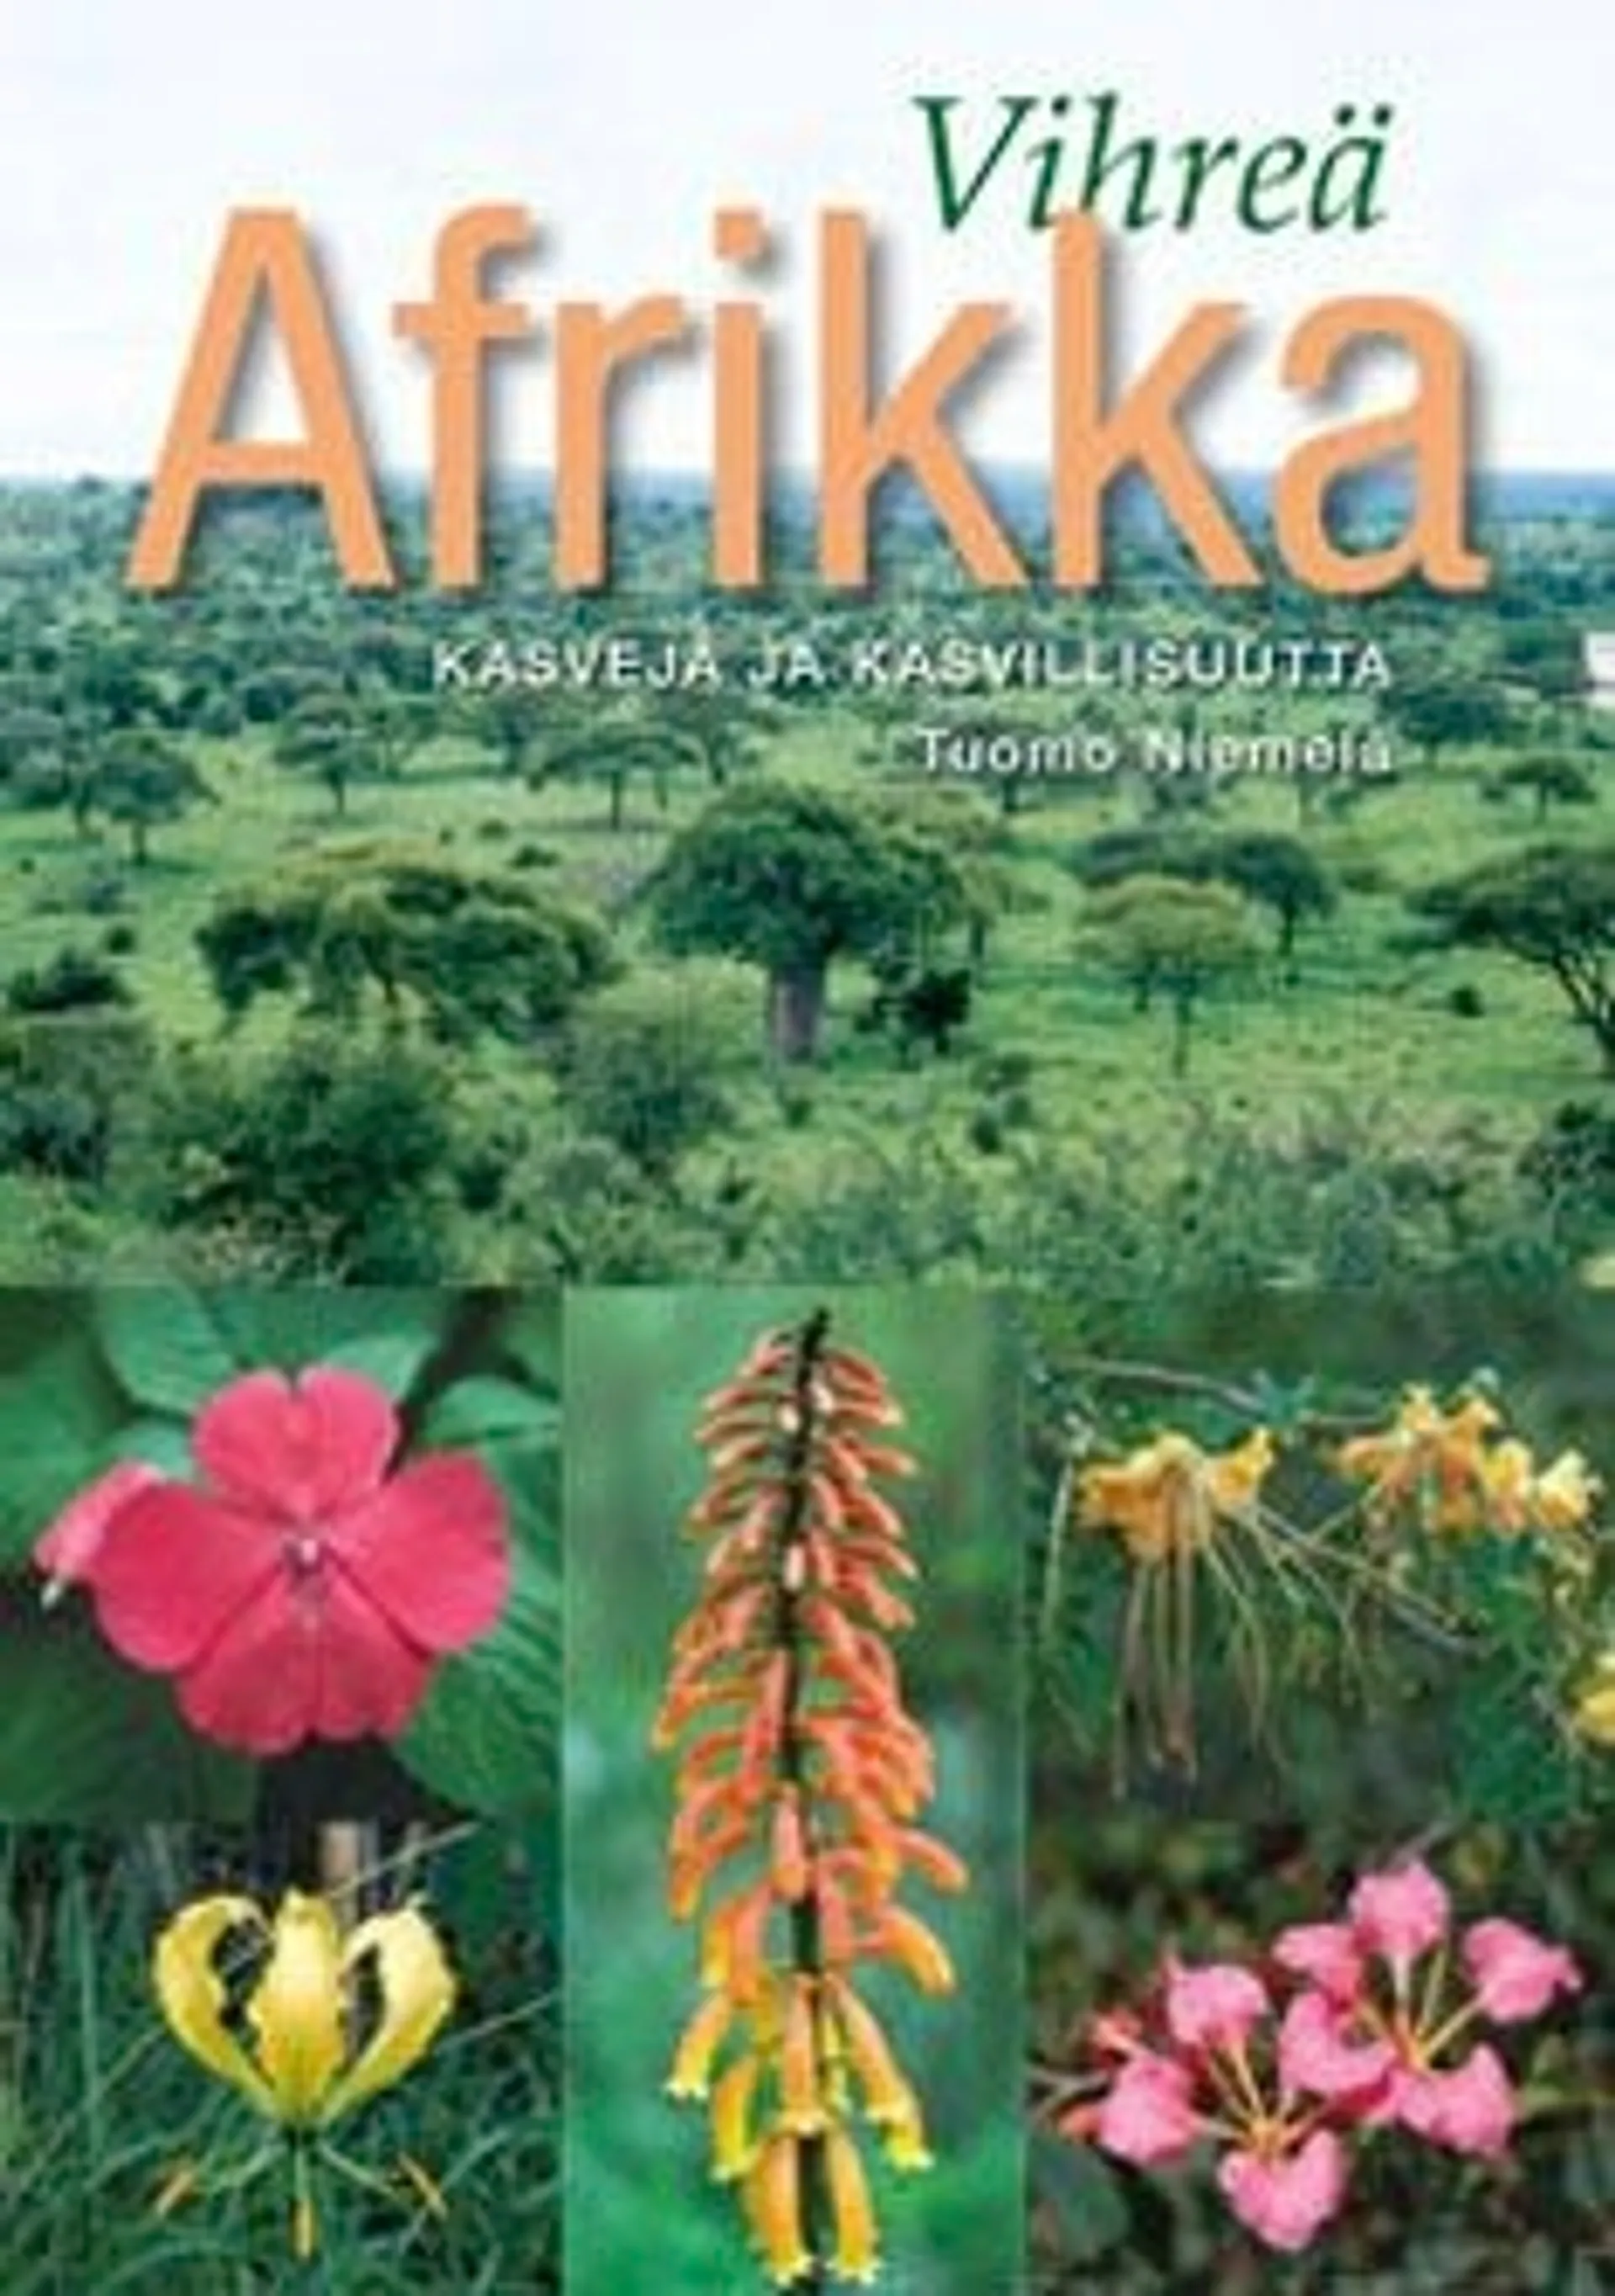 Niemelä, Vihreä Afrikka - kasveja ja kasvillisuutta